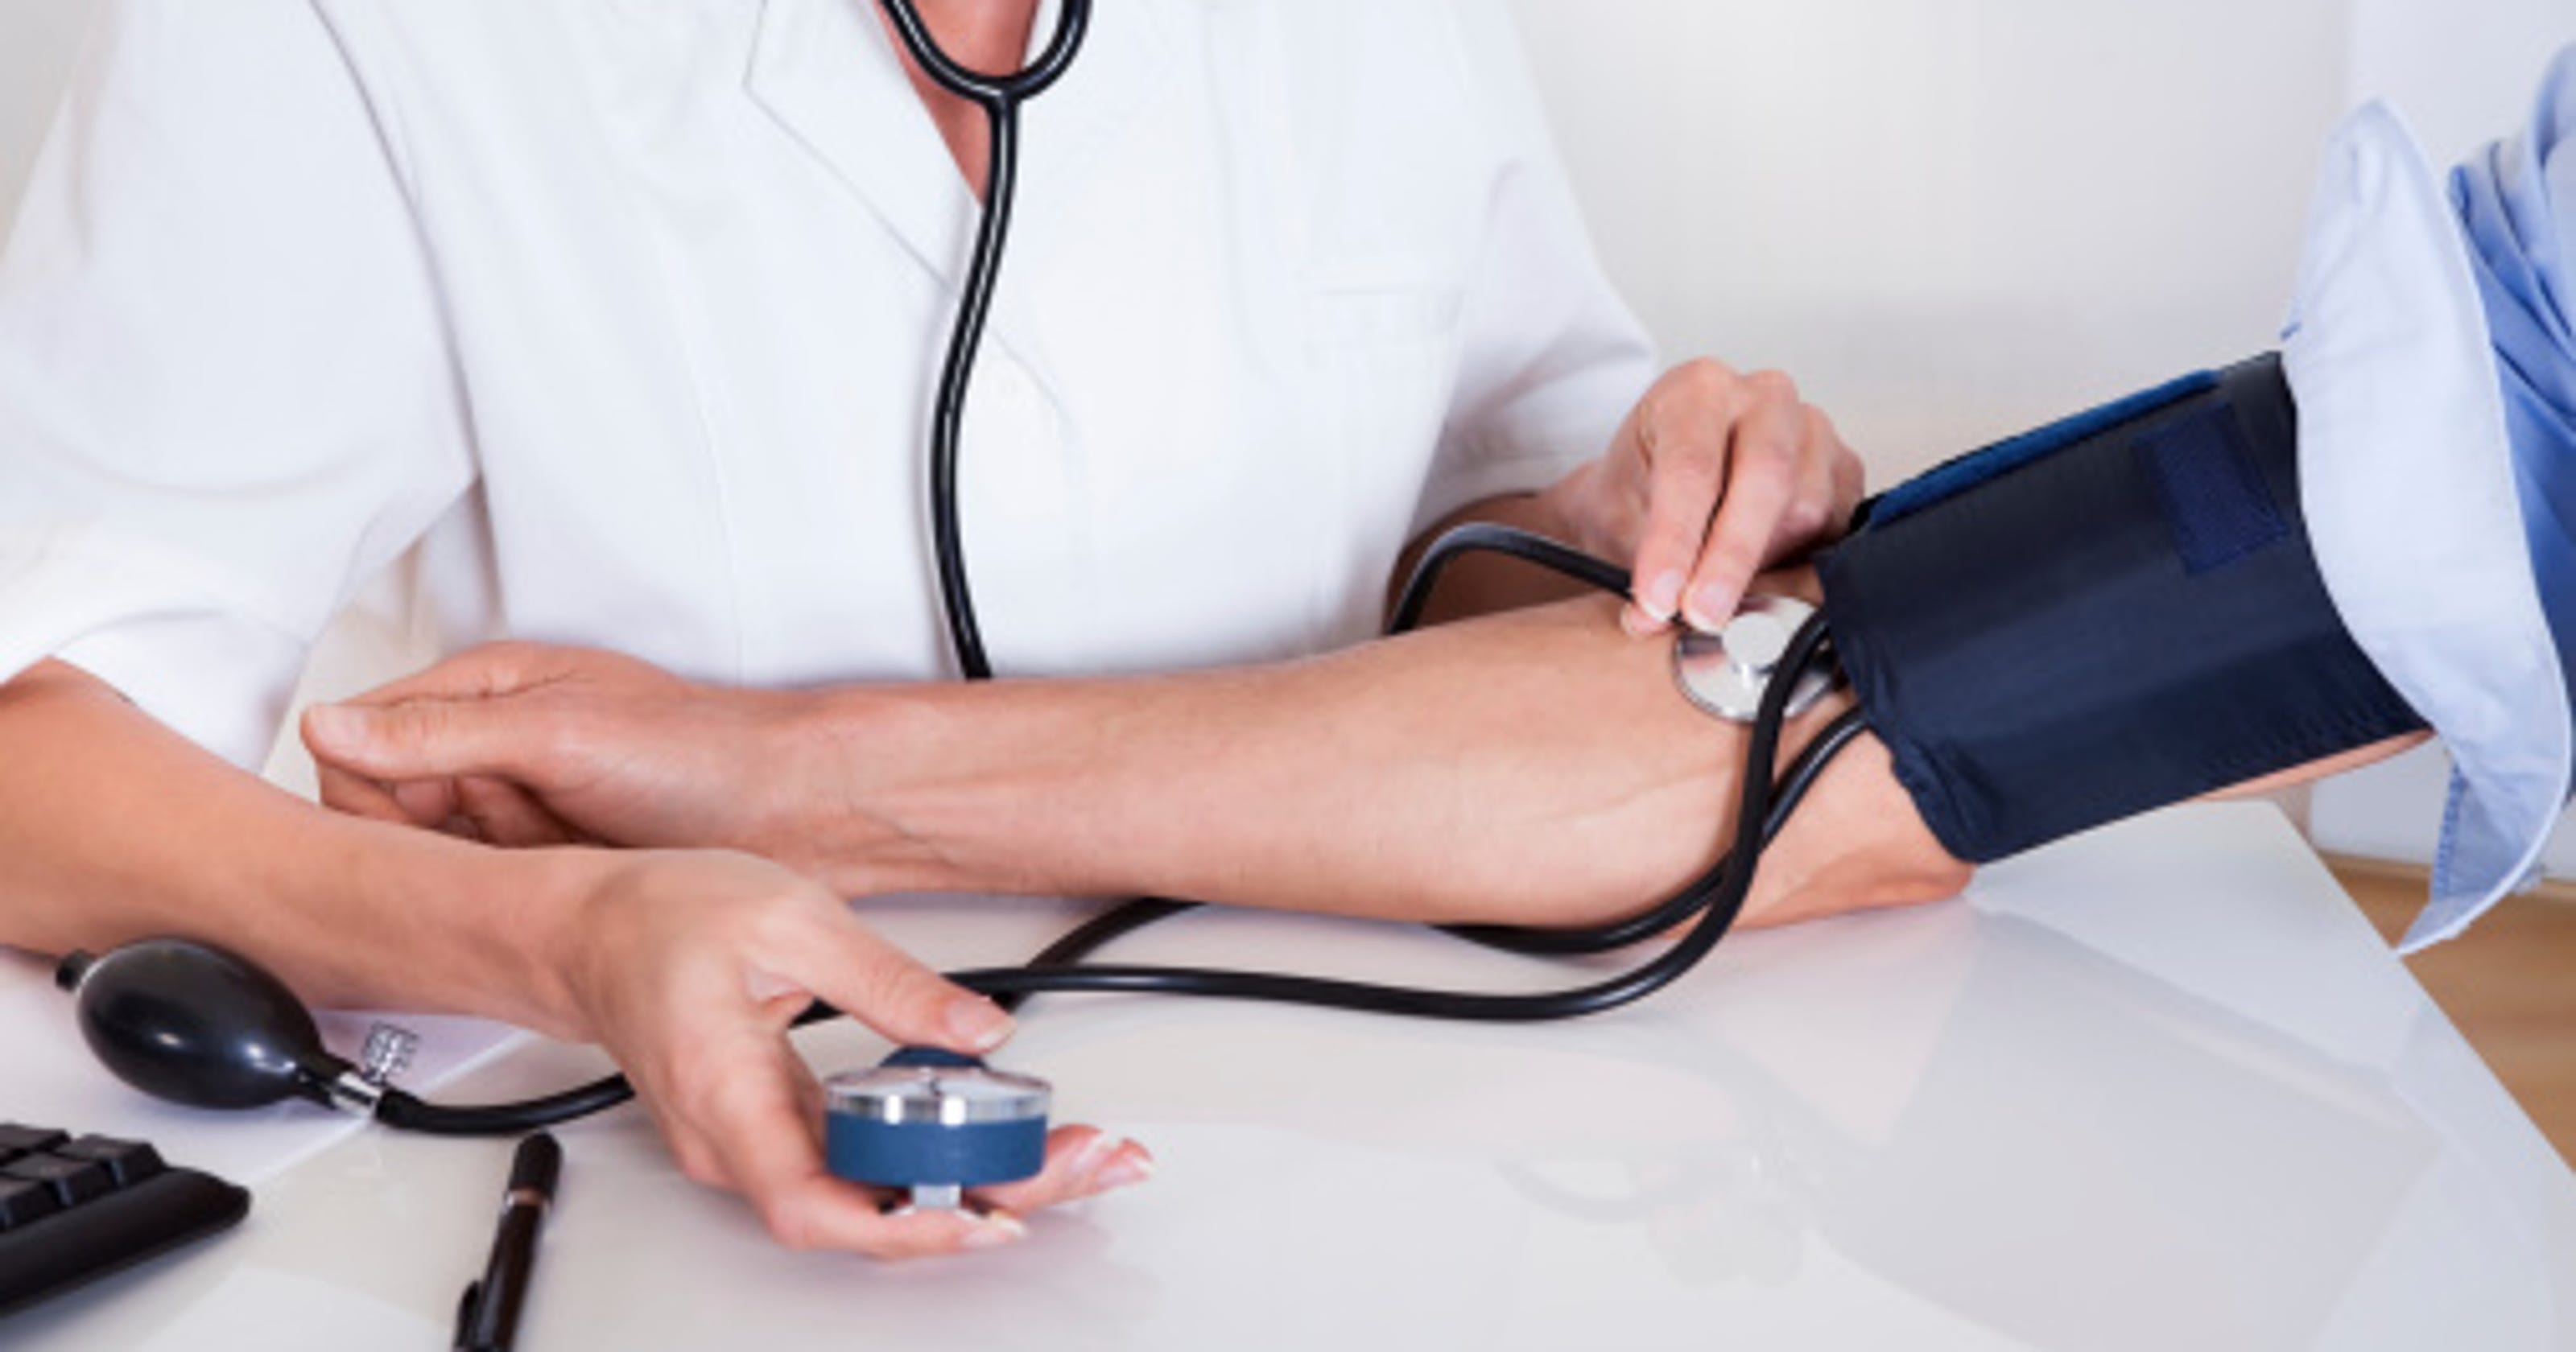 free-blood-pressure-screenings-available-in-moorestown